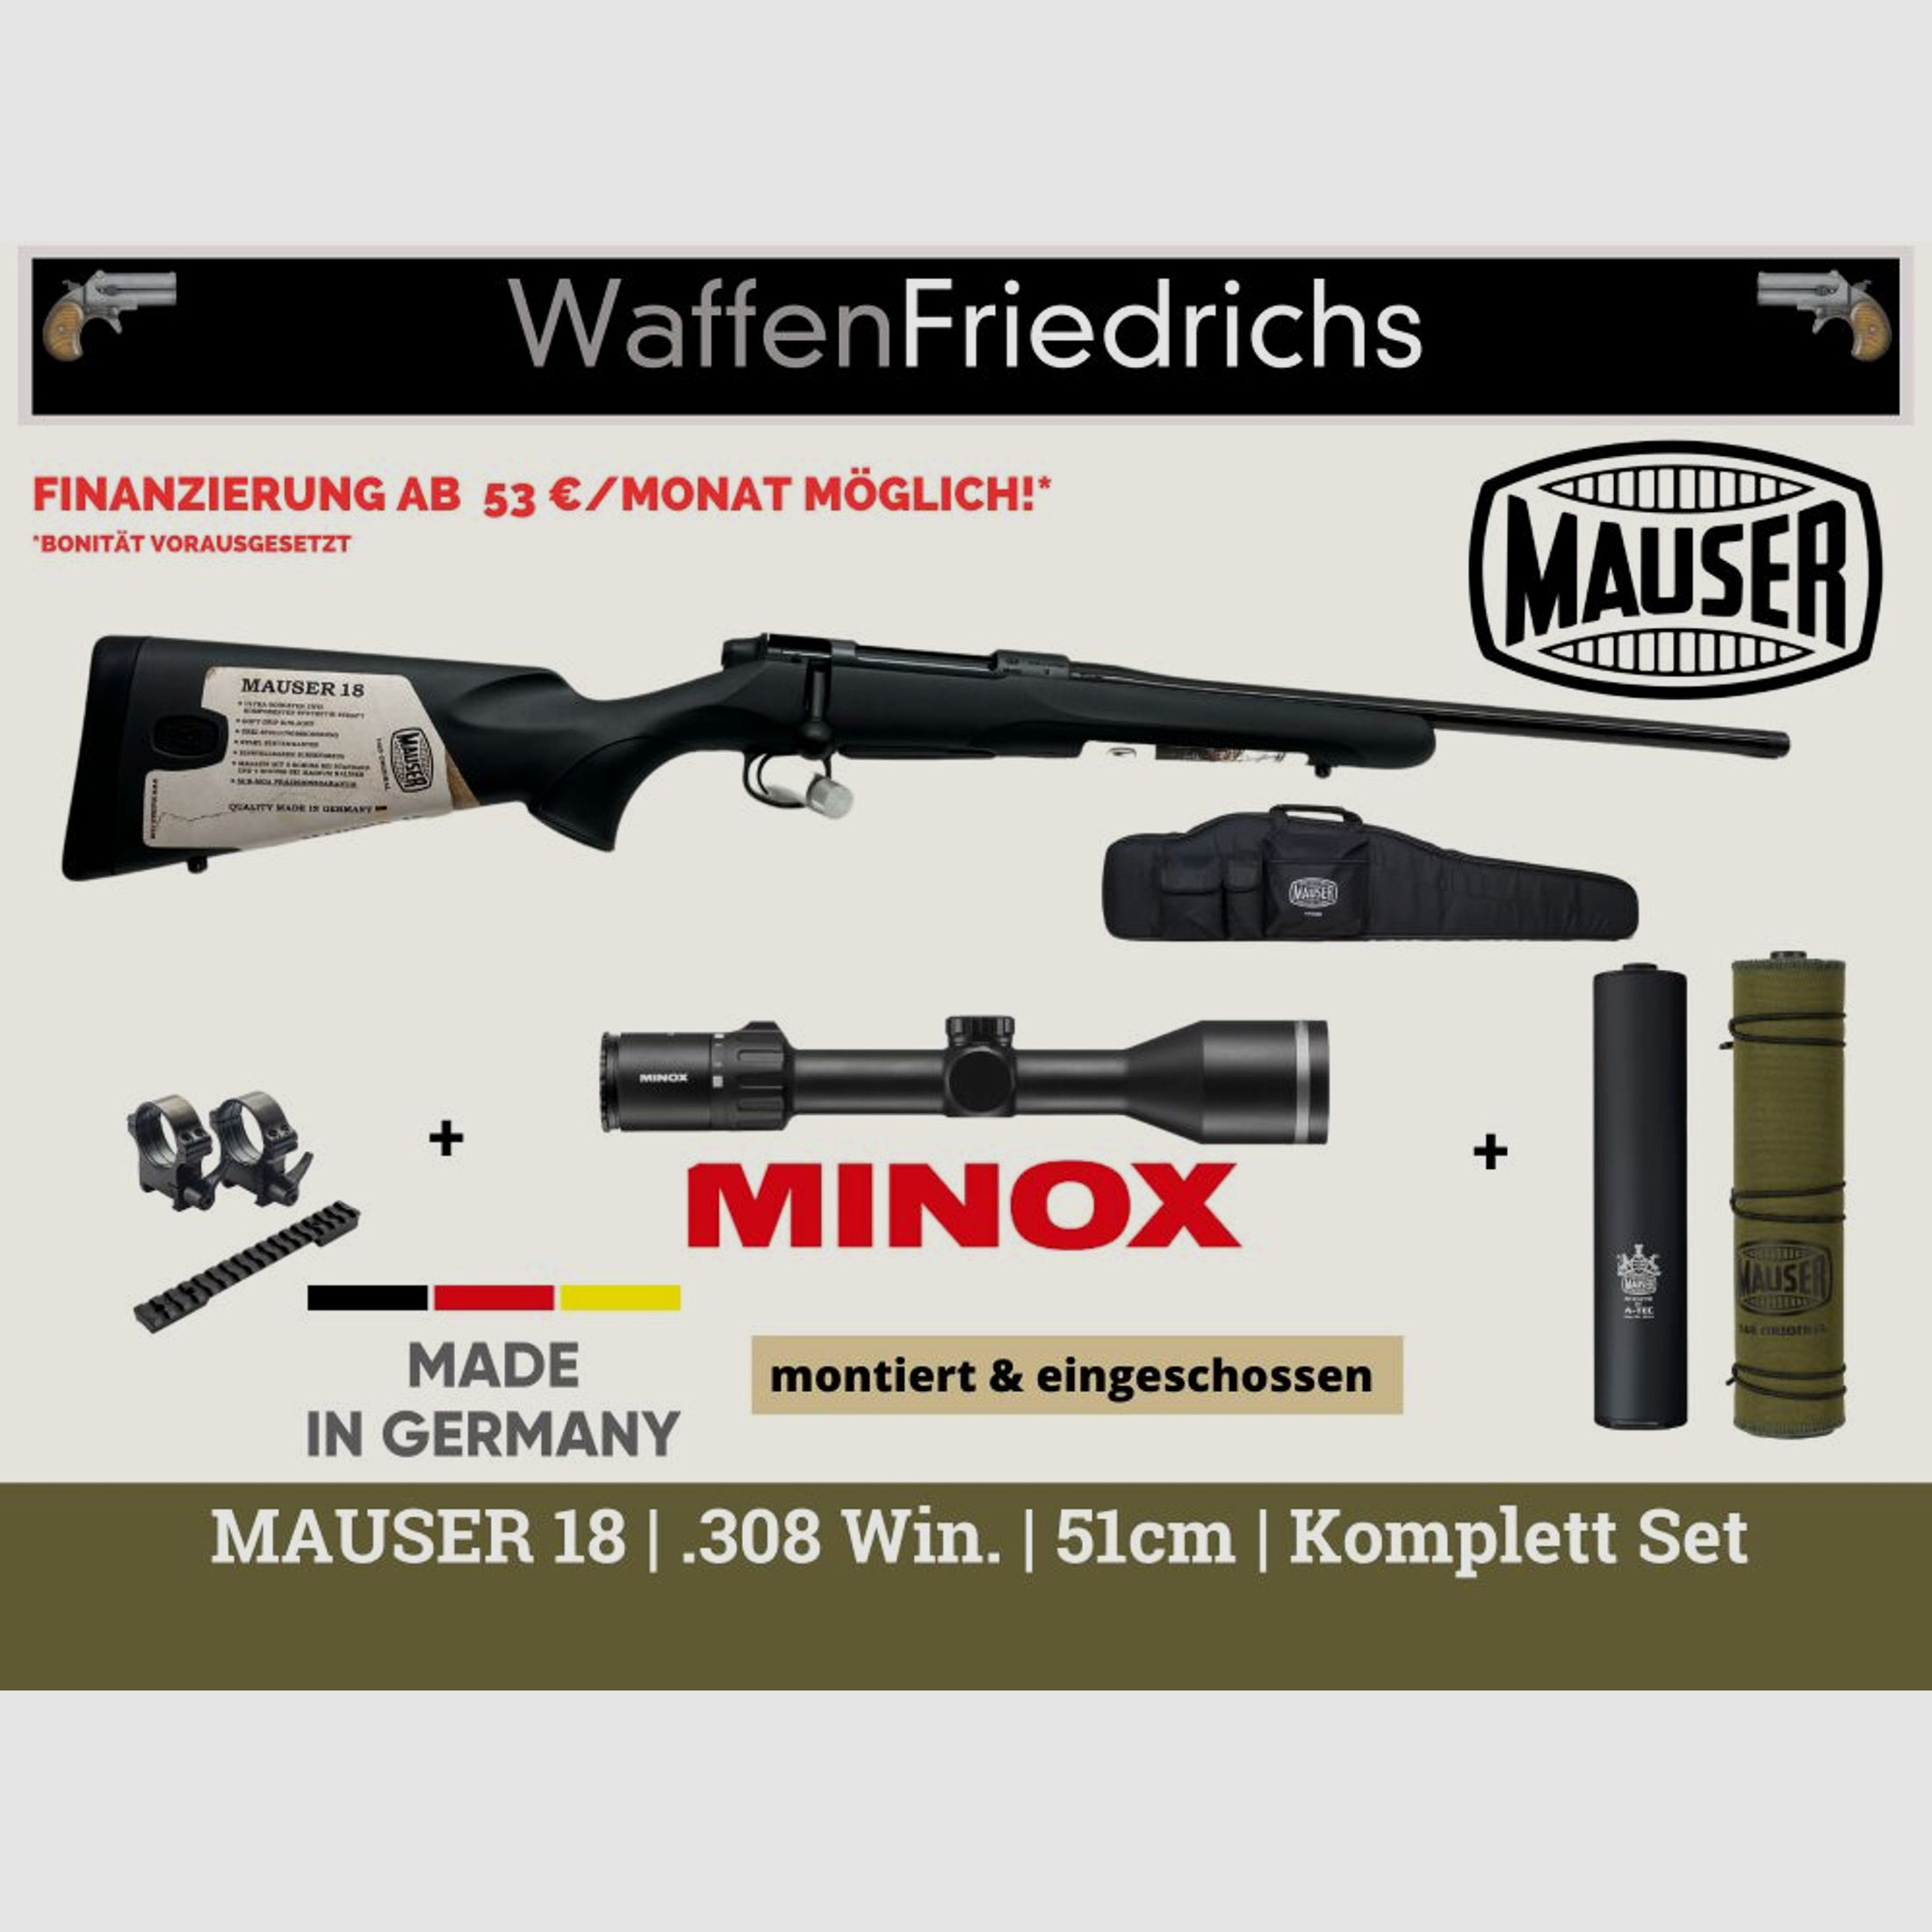 MAUSER	 M18 | 51cm | Komplettes Jungjäger - Waffen Friedrichs